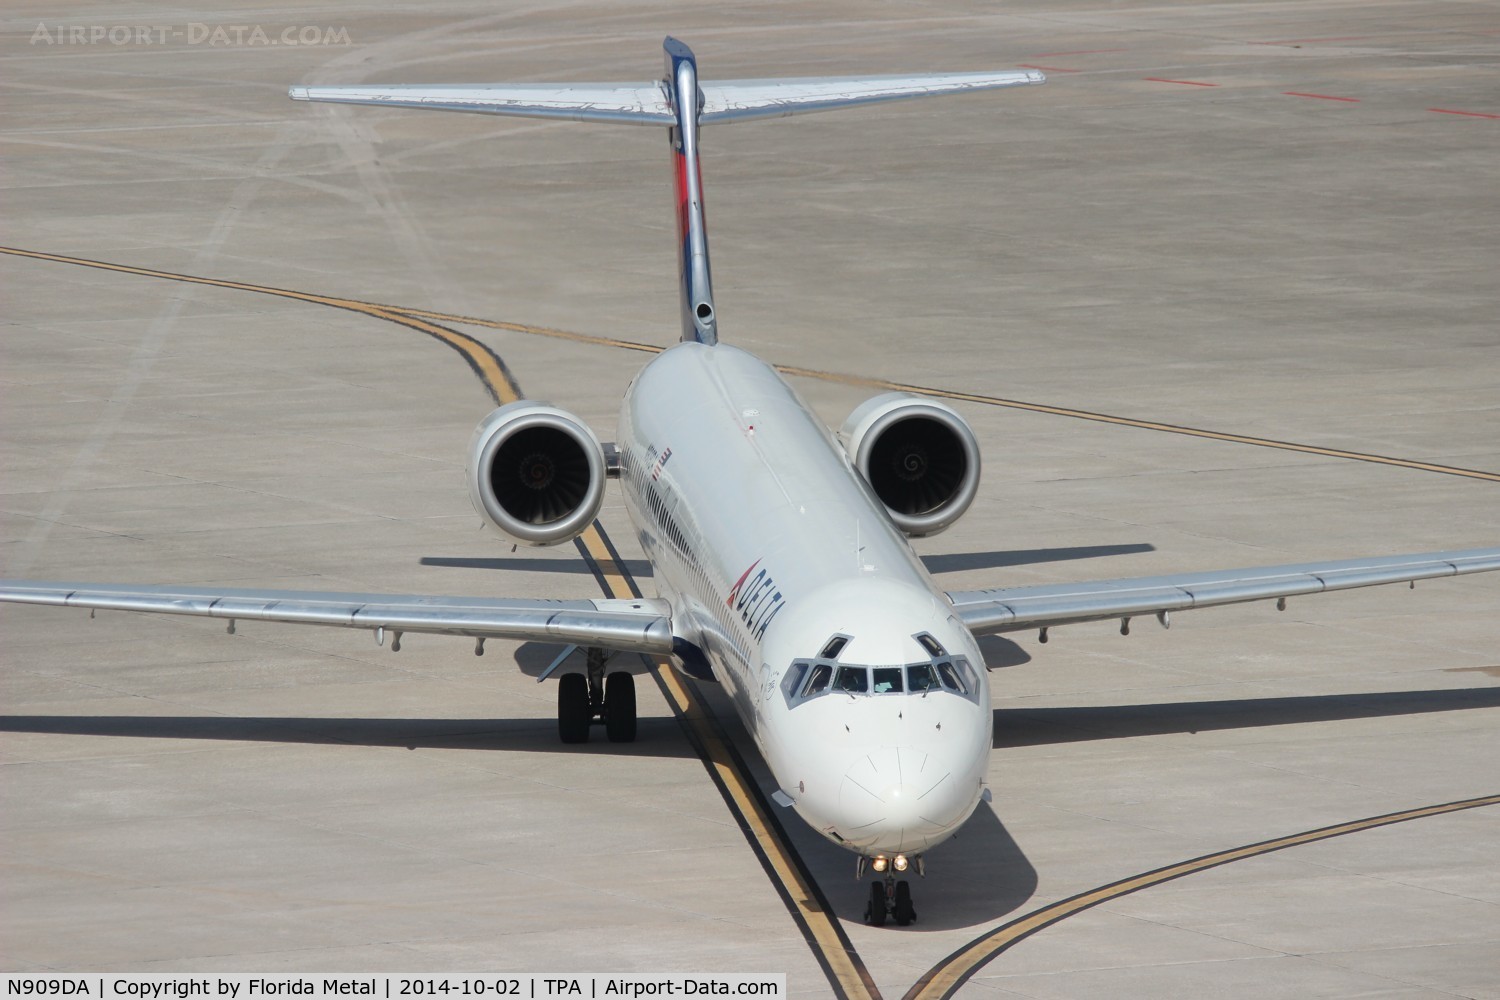 N909DA, 1995 McDonnell Douglas MD-90-30 C/N 53389, Delta